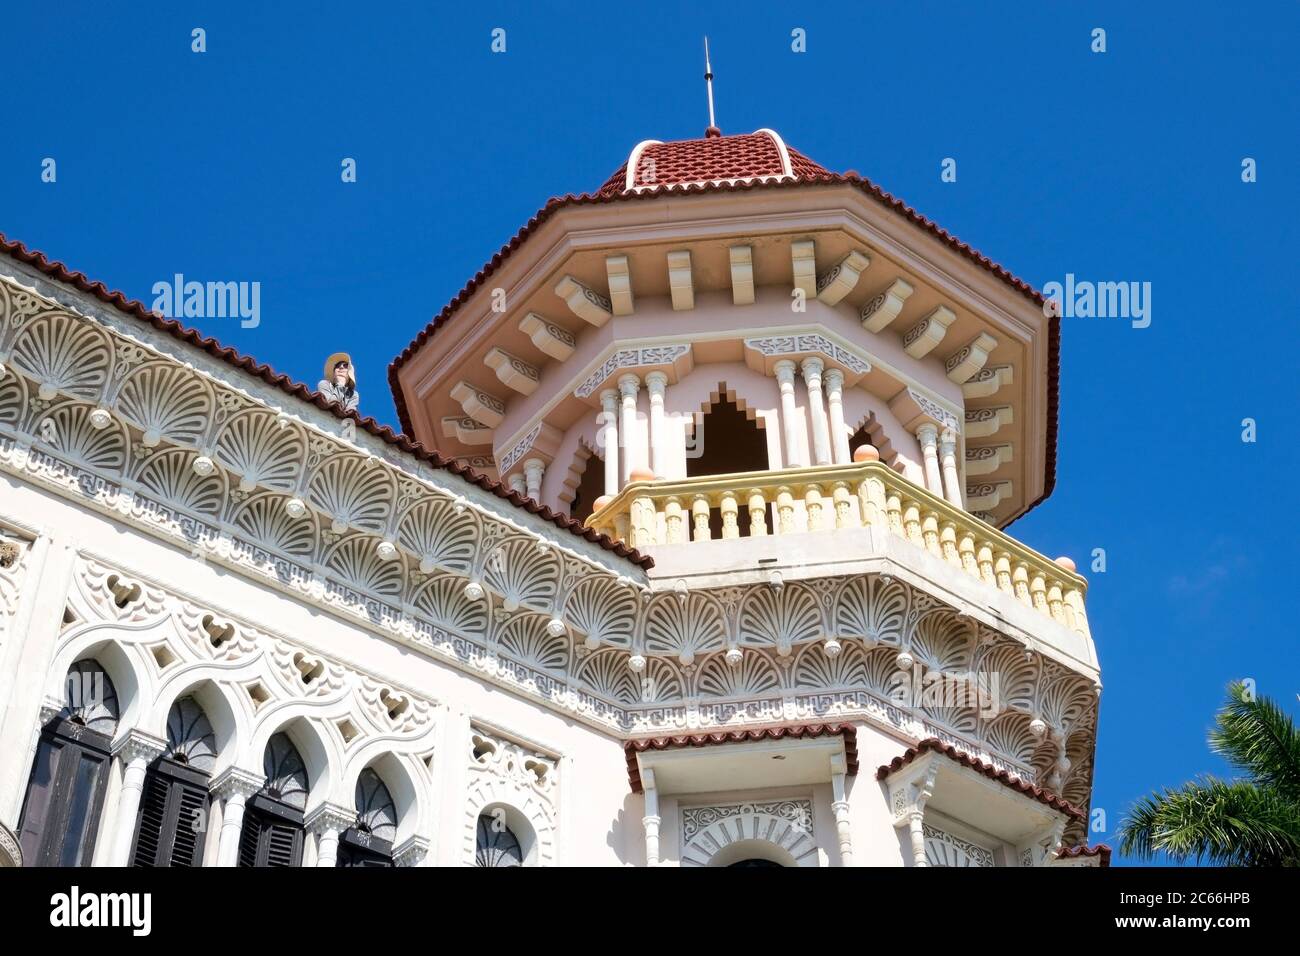 Cuba, l'Avana, Cienfuegos, Palacio de Valle, dettaglio, torre e tetto piano, turistico Foto Stock